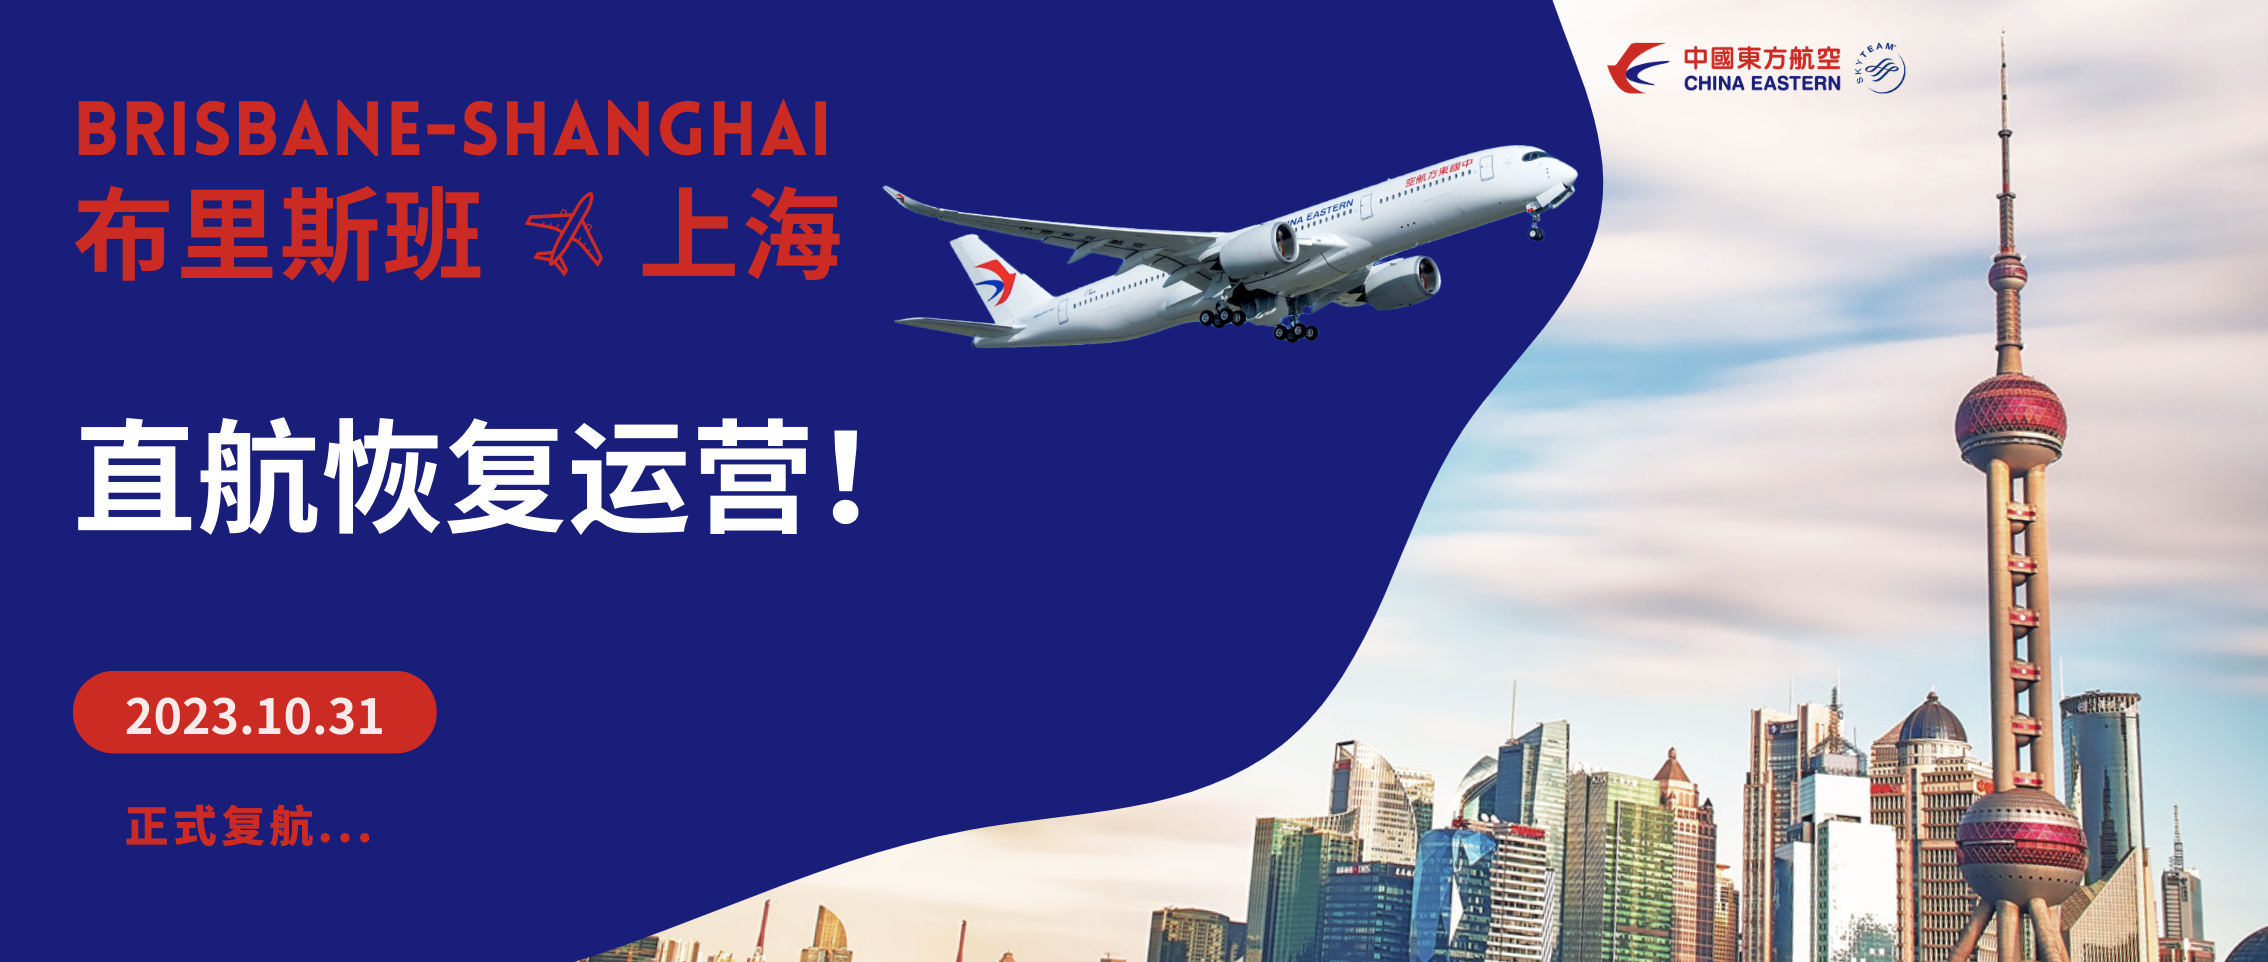 Brisbane direct flight to shanghai